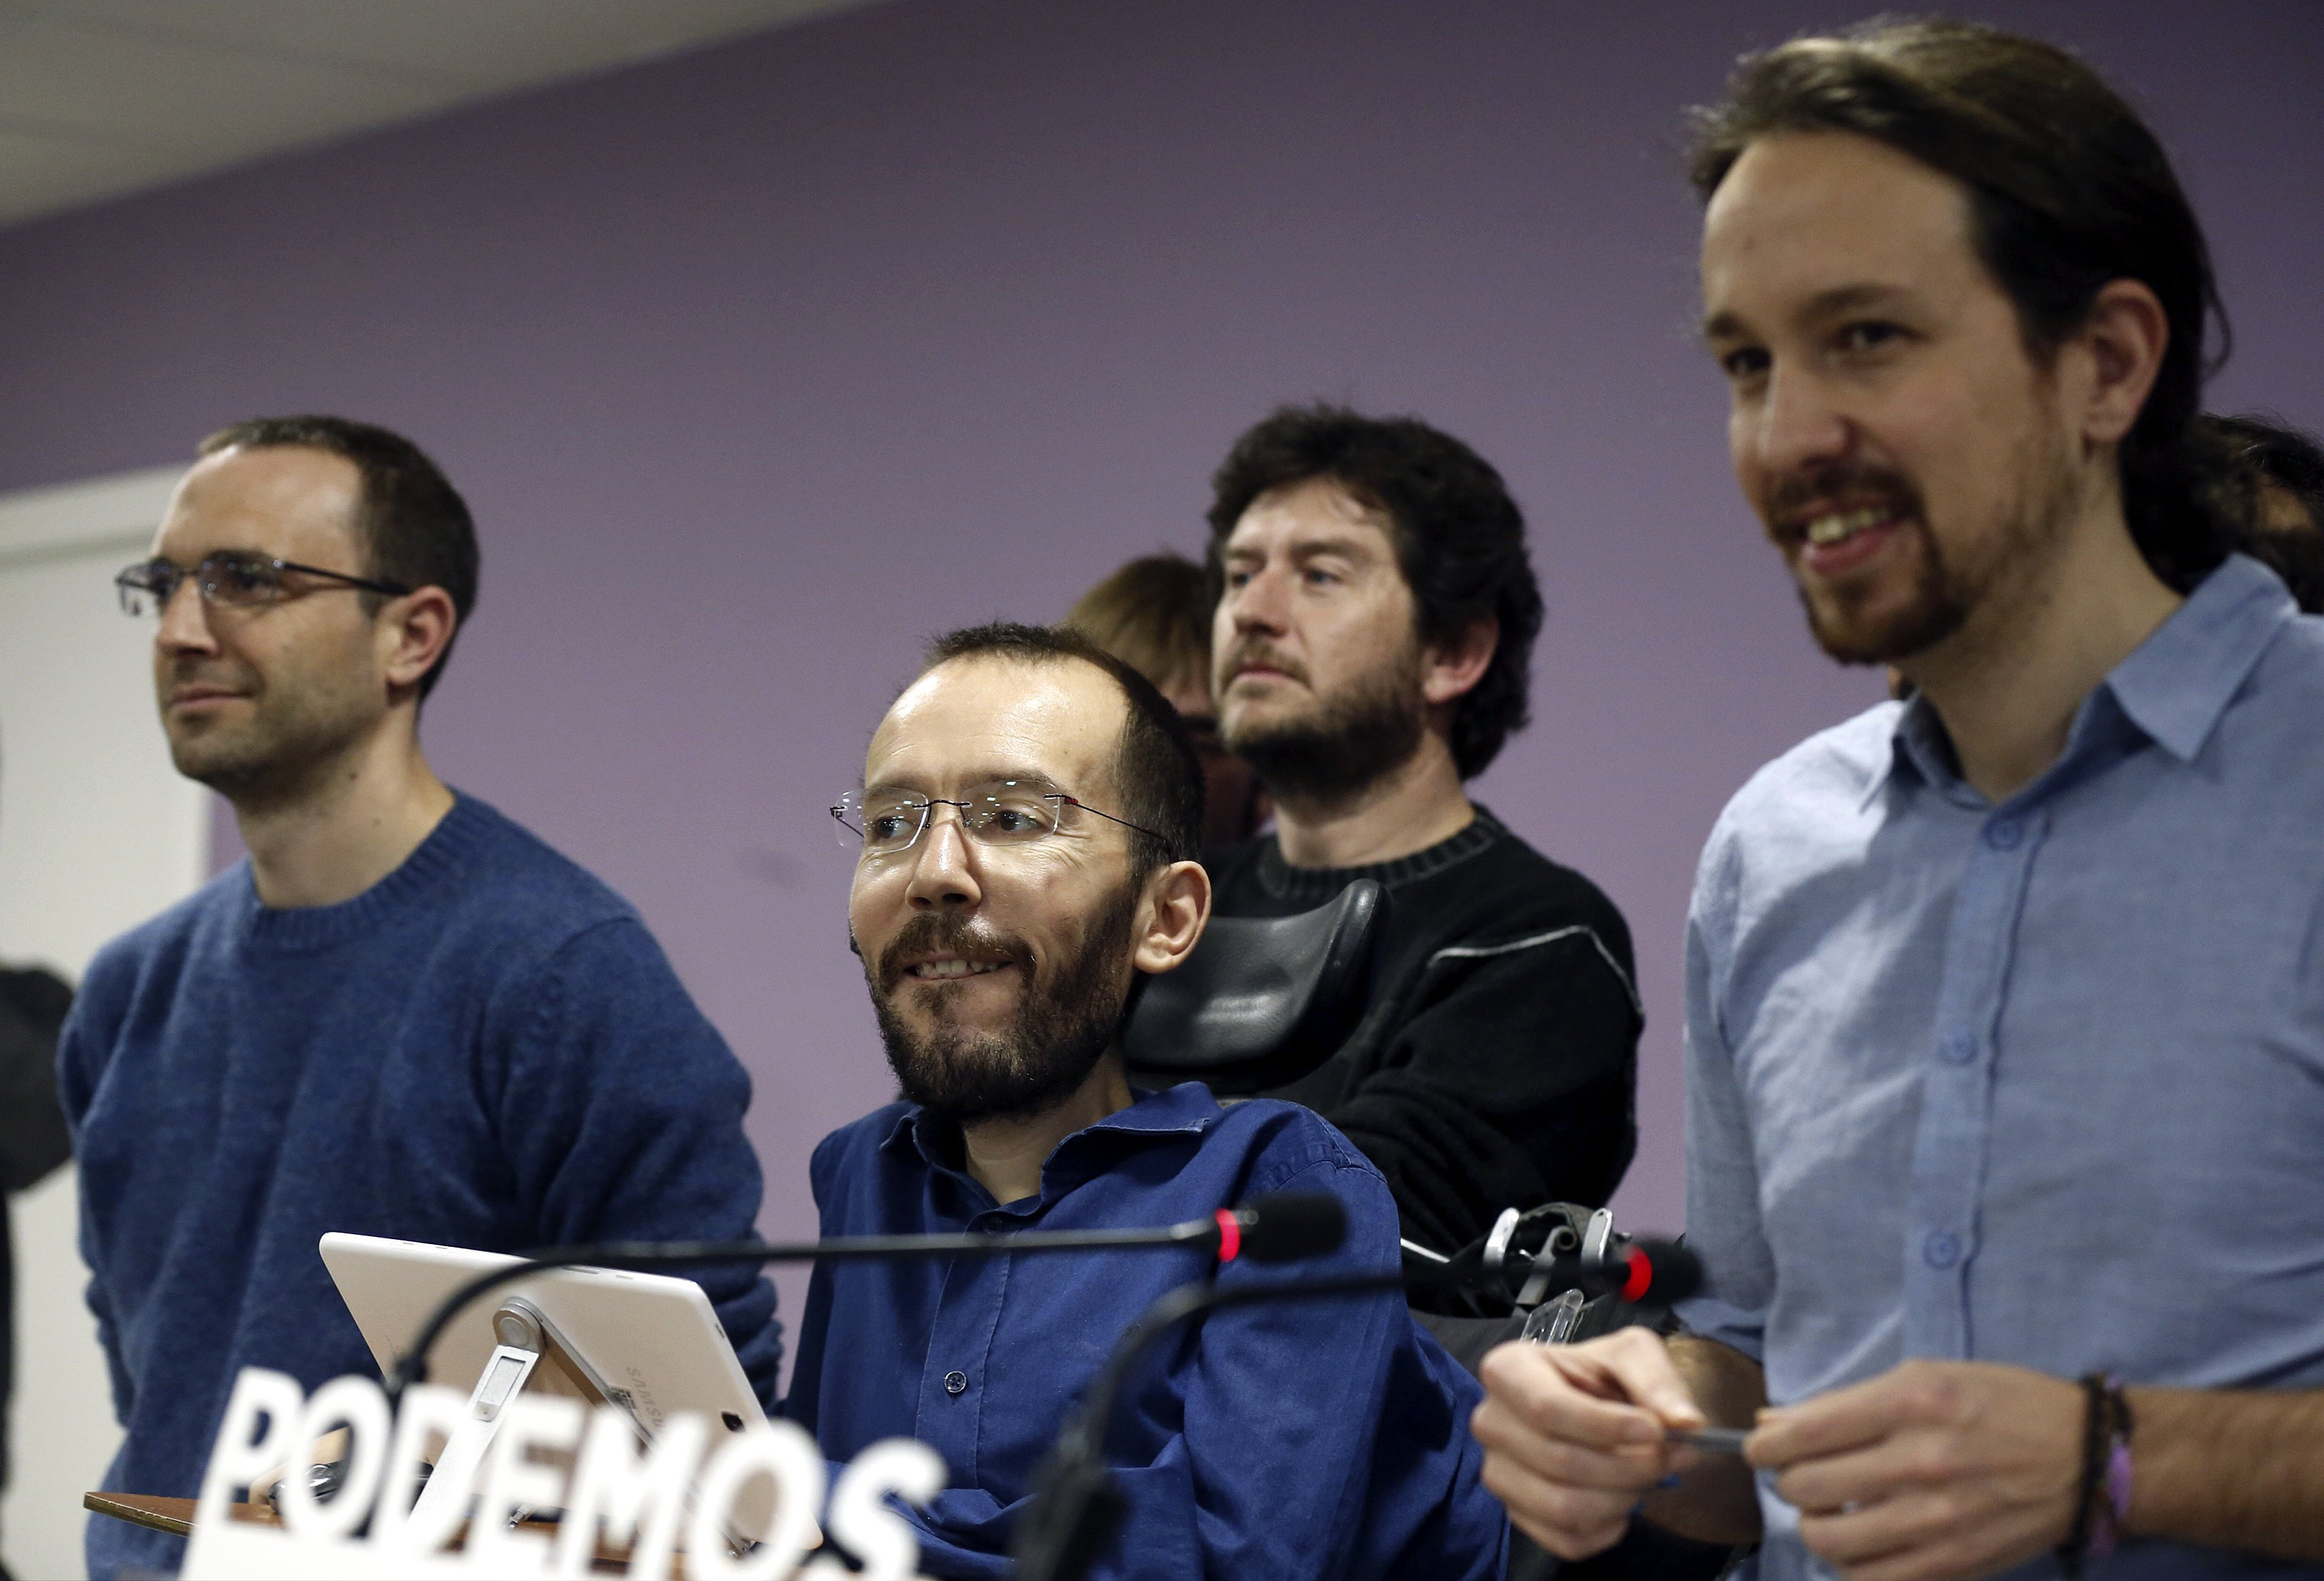 La propuesta parlamentaria de Podemos pretende sacar del Gobierno español a un partido (PP) que 